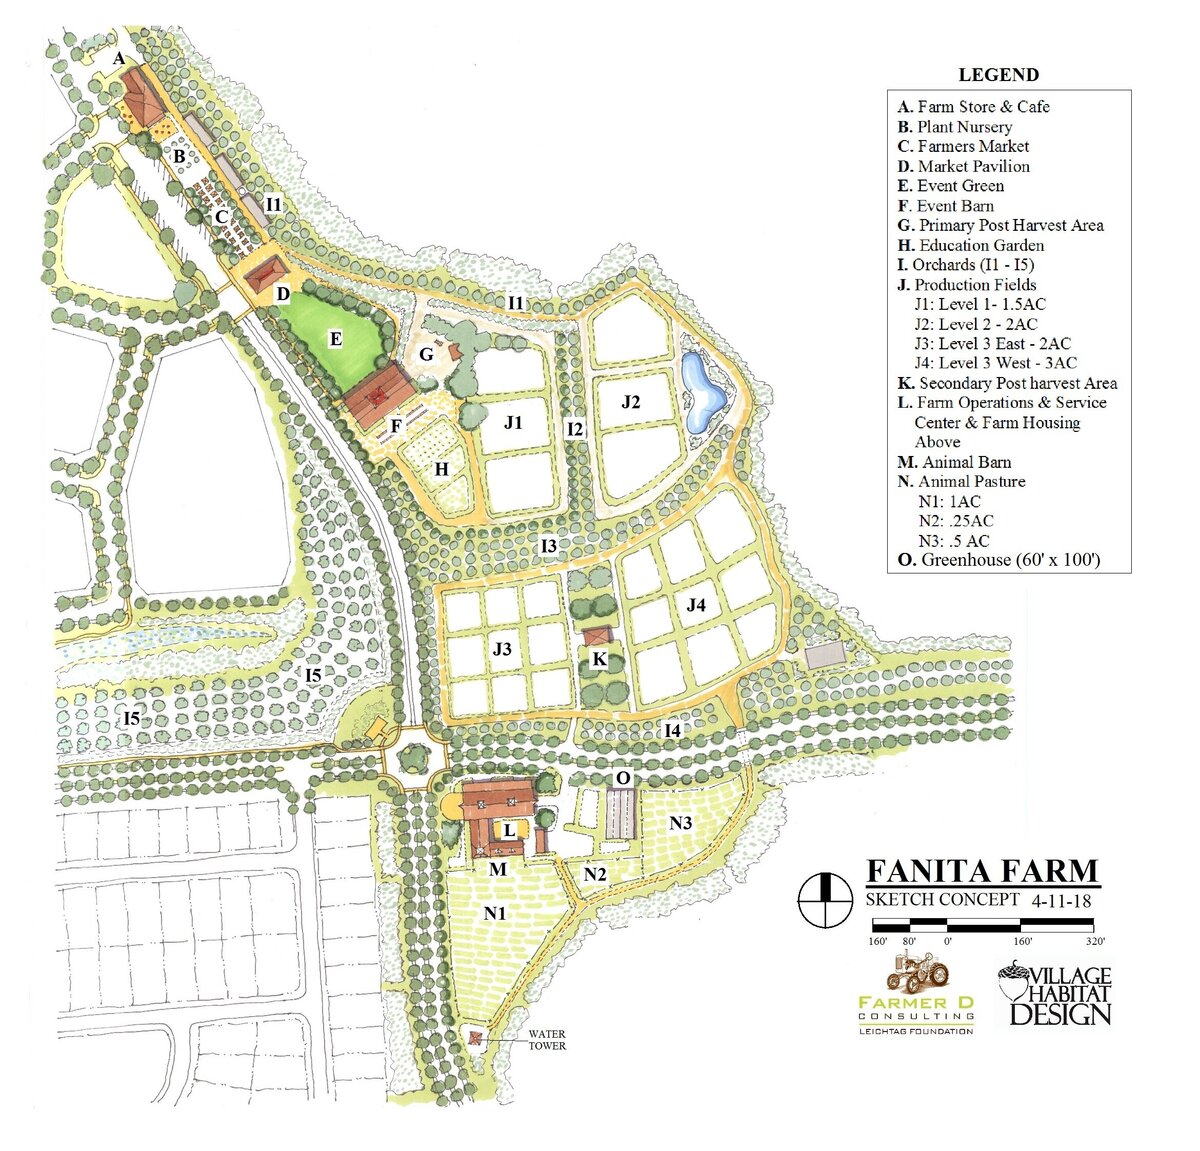 Fanita Farm Concept - 4-11-18 legend